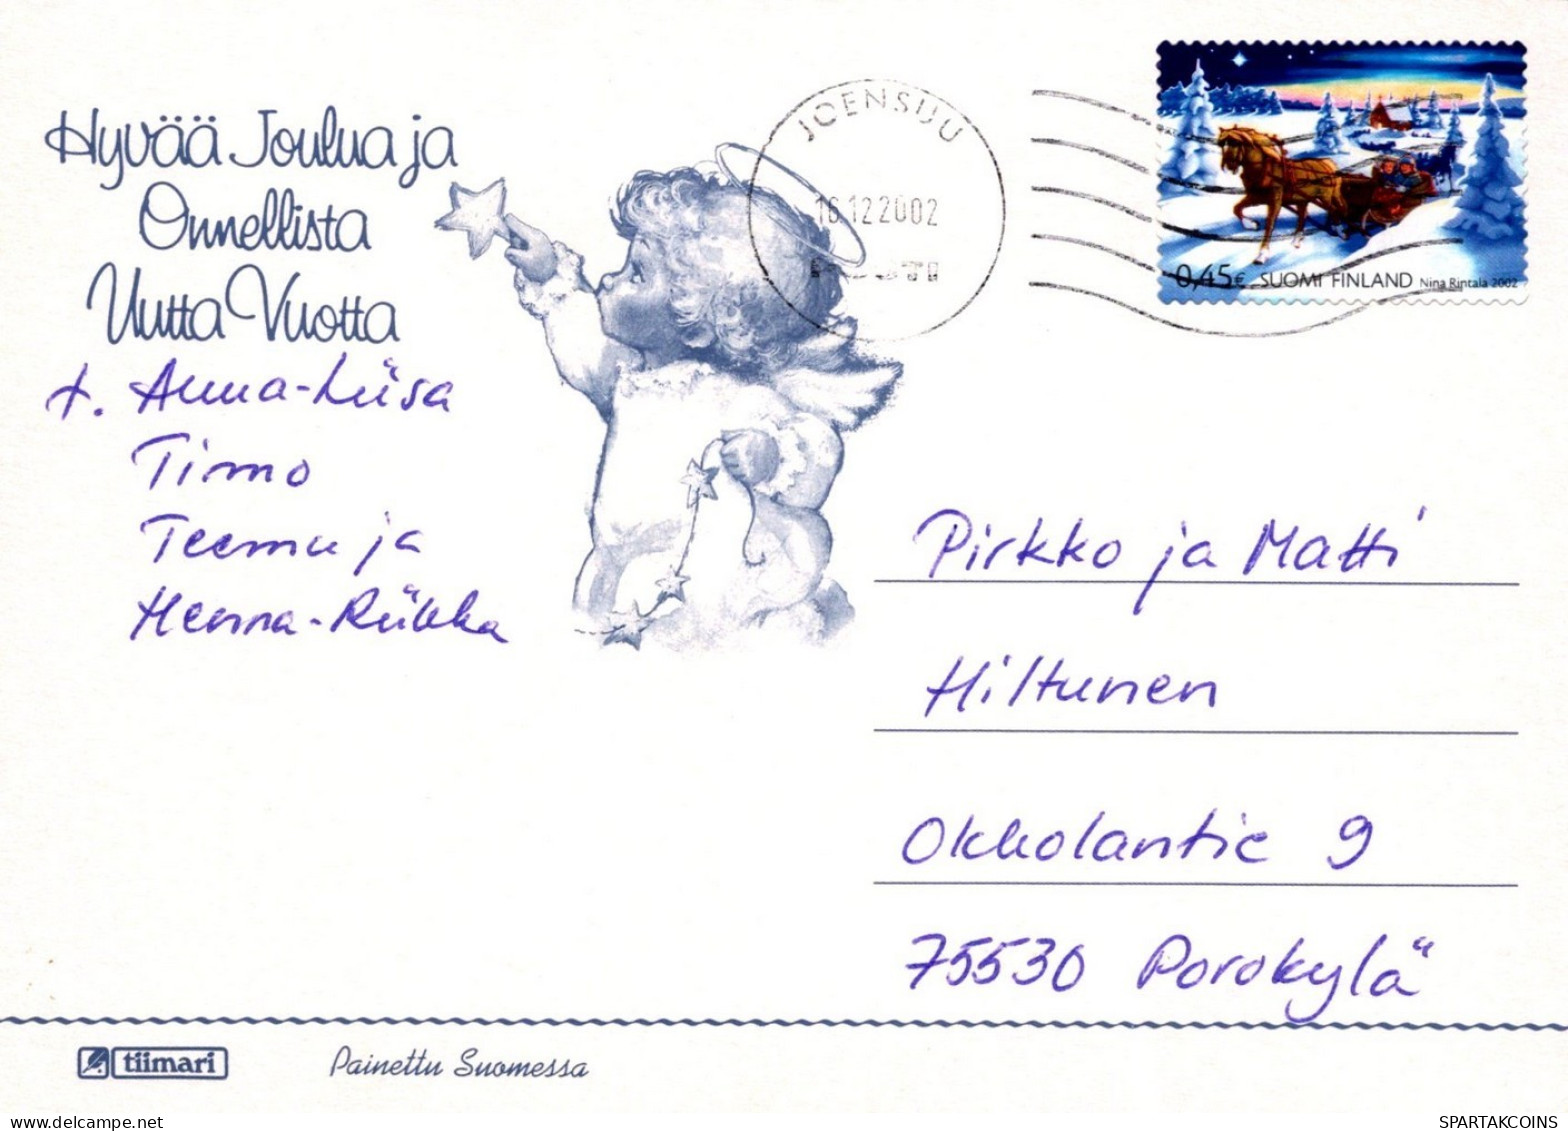 ANGE NOËL Vintage Carte Postale CPSM #PAH461.FR - Angels